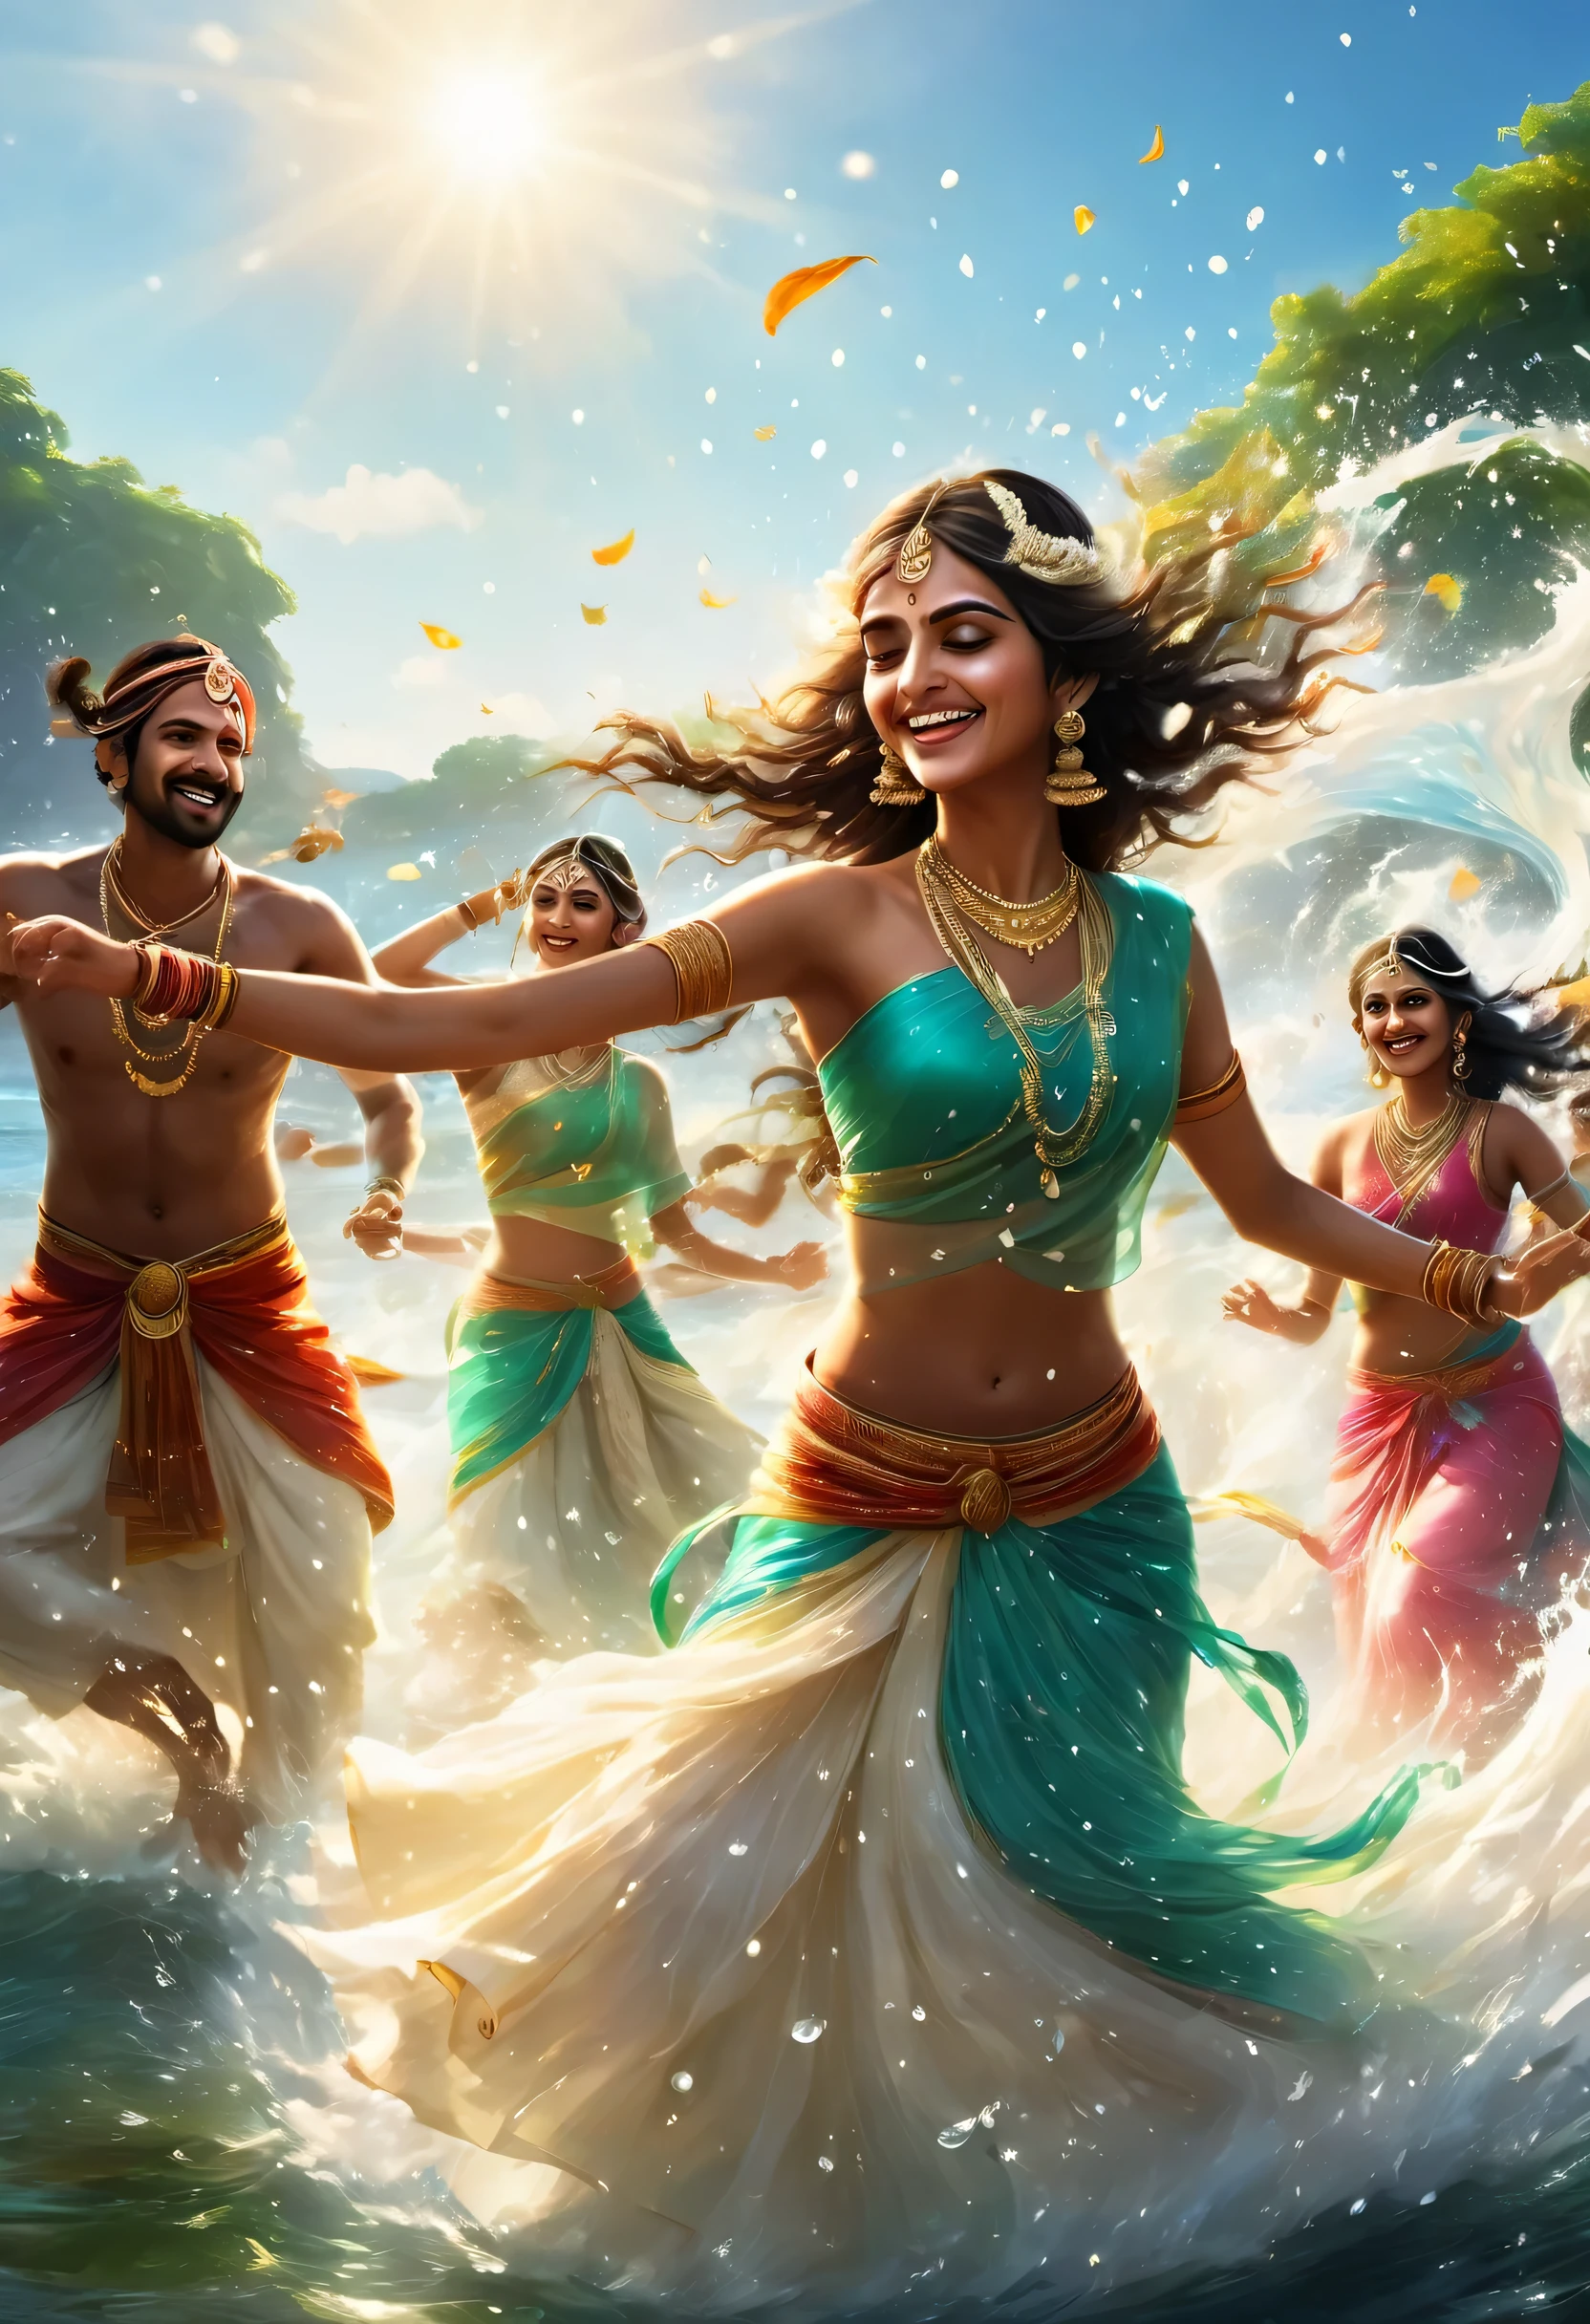 踊るインド人:100人,インド映画スタイル,海の背景,浅瀬で踊る,水しぶき,踊る水滴,とても楽しそう,音楽が聞こえてきそうな風景,リズムを感じます,笑顔,インド人,一緒に踊ろう,ハッピー,レンダリング,アンリアルエンジン,美しい光と影,フォトリアル,リアルな質感,閃光,私にさせて&#39;一緒に踊ろう,超エキサイティングなシーン,複雑な詳細